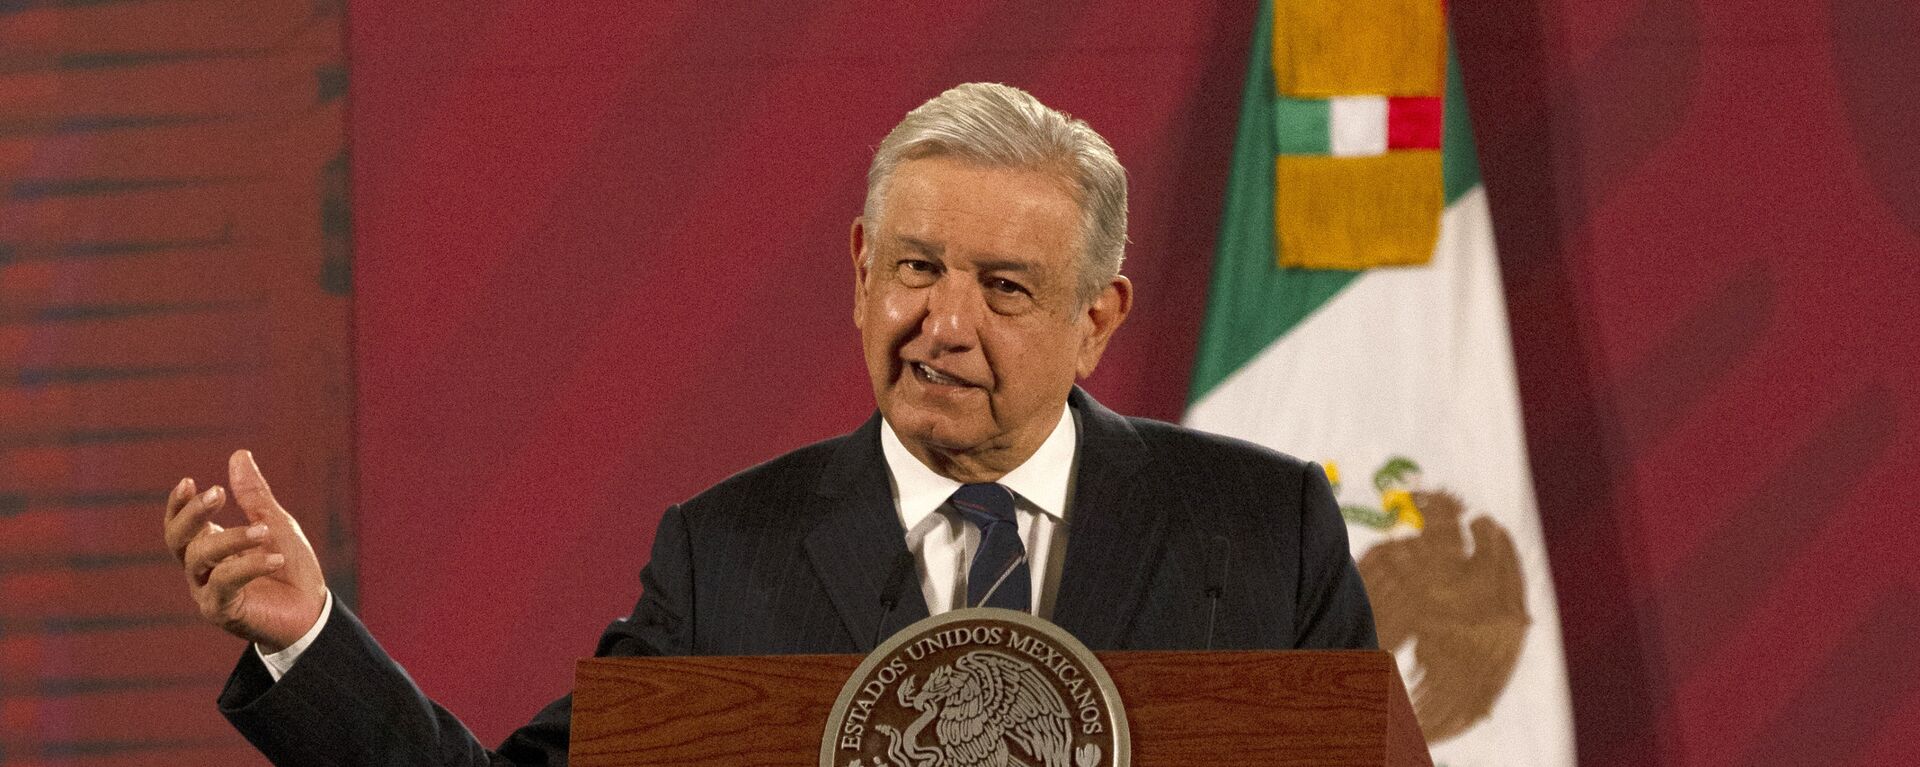 Andrés Manuel López Obrador, presidente de México - Sputnik Mundo, 1920, 04.12.2020